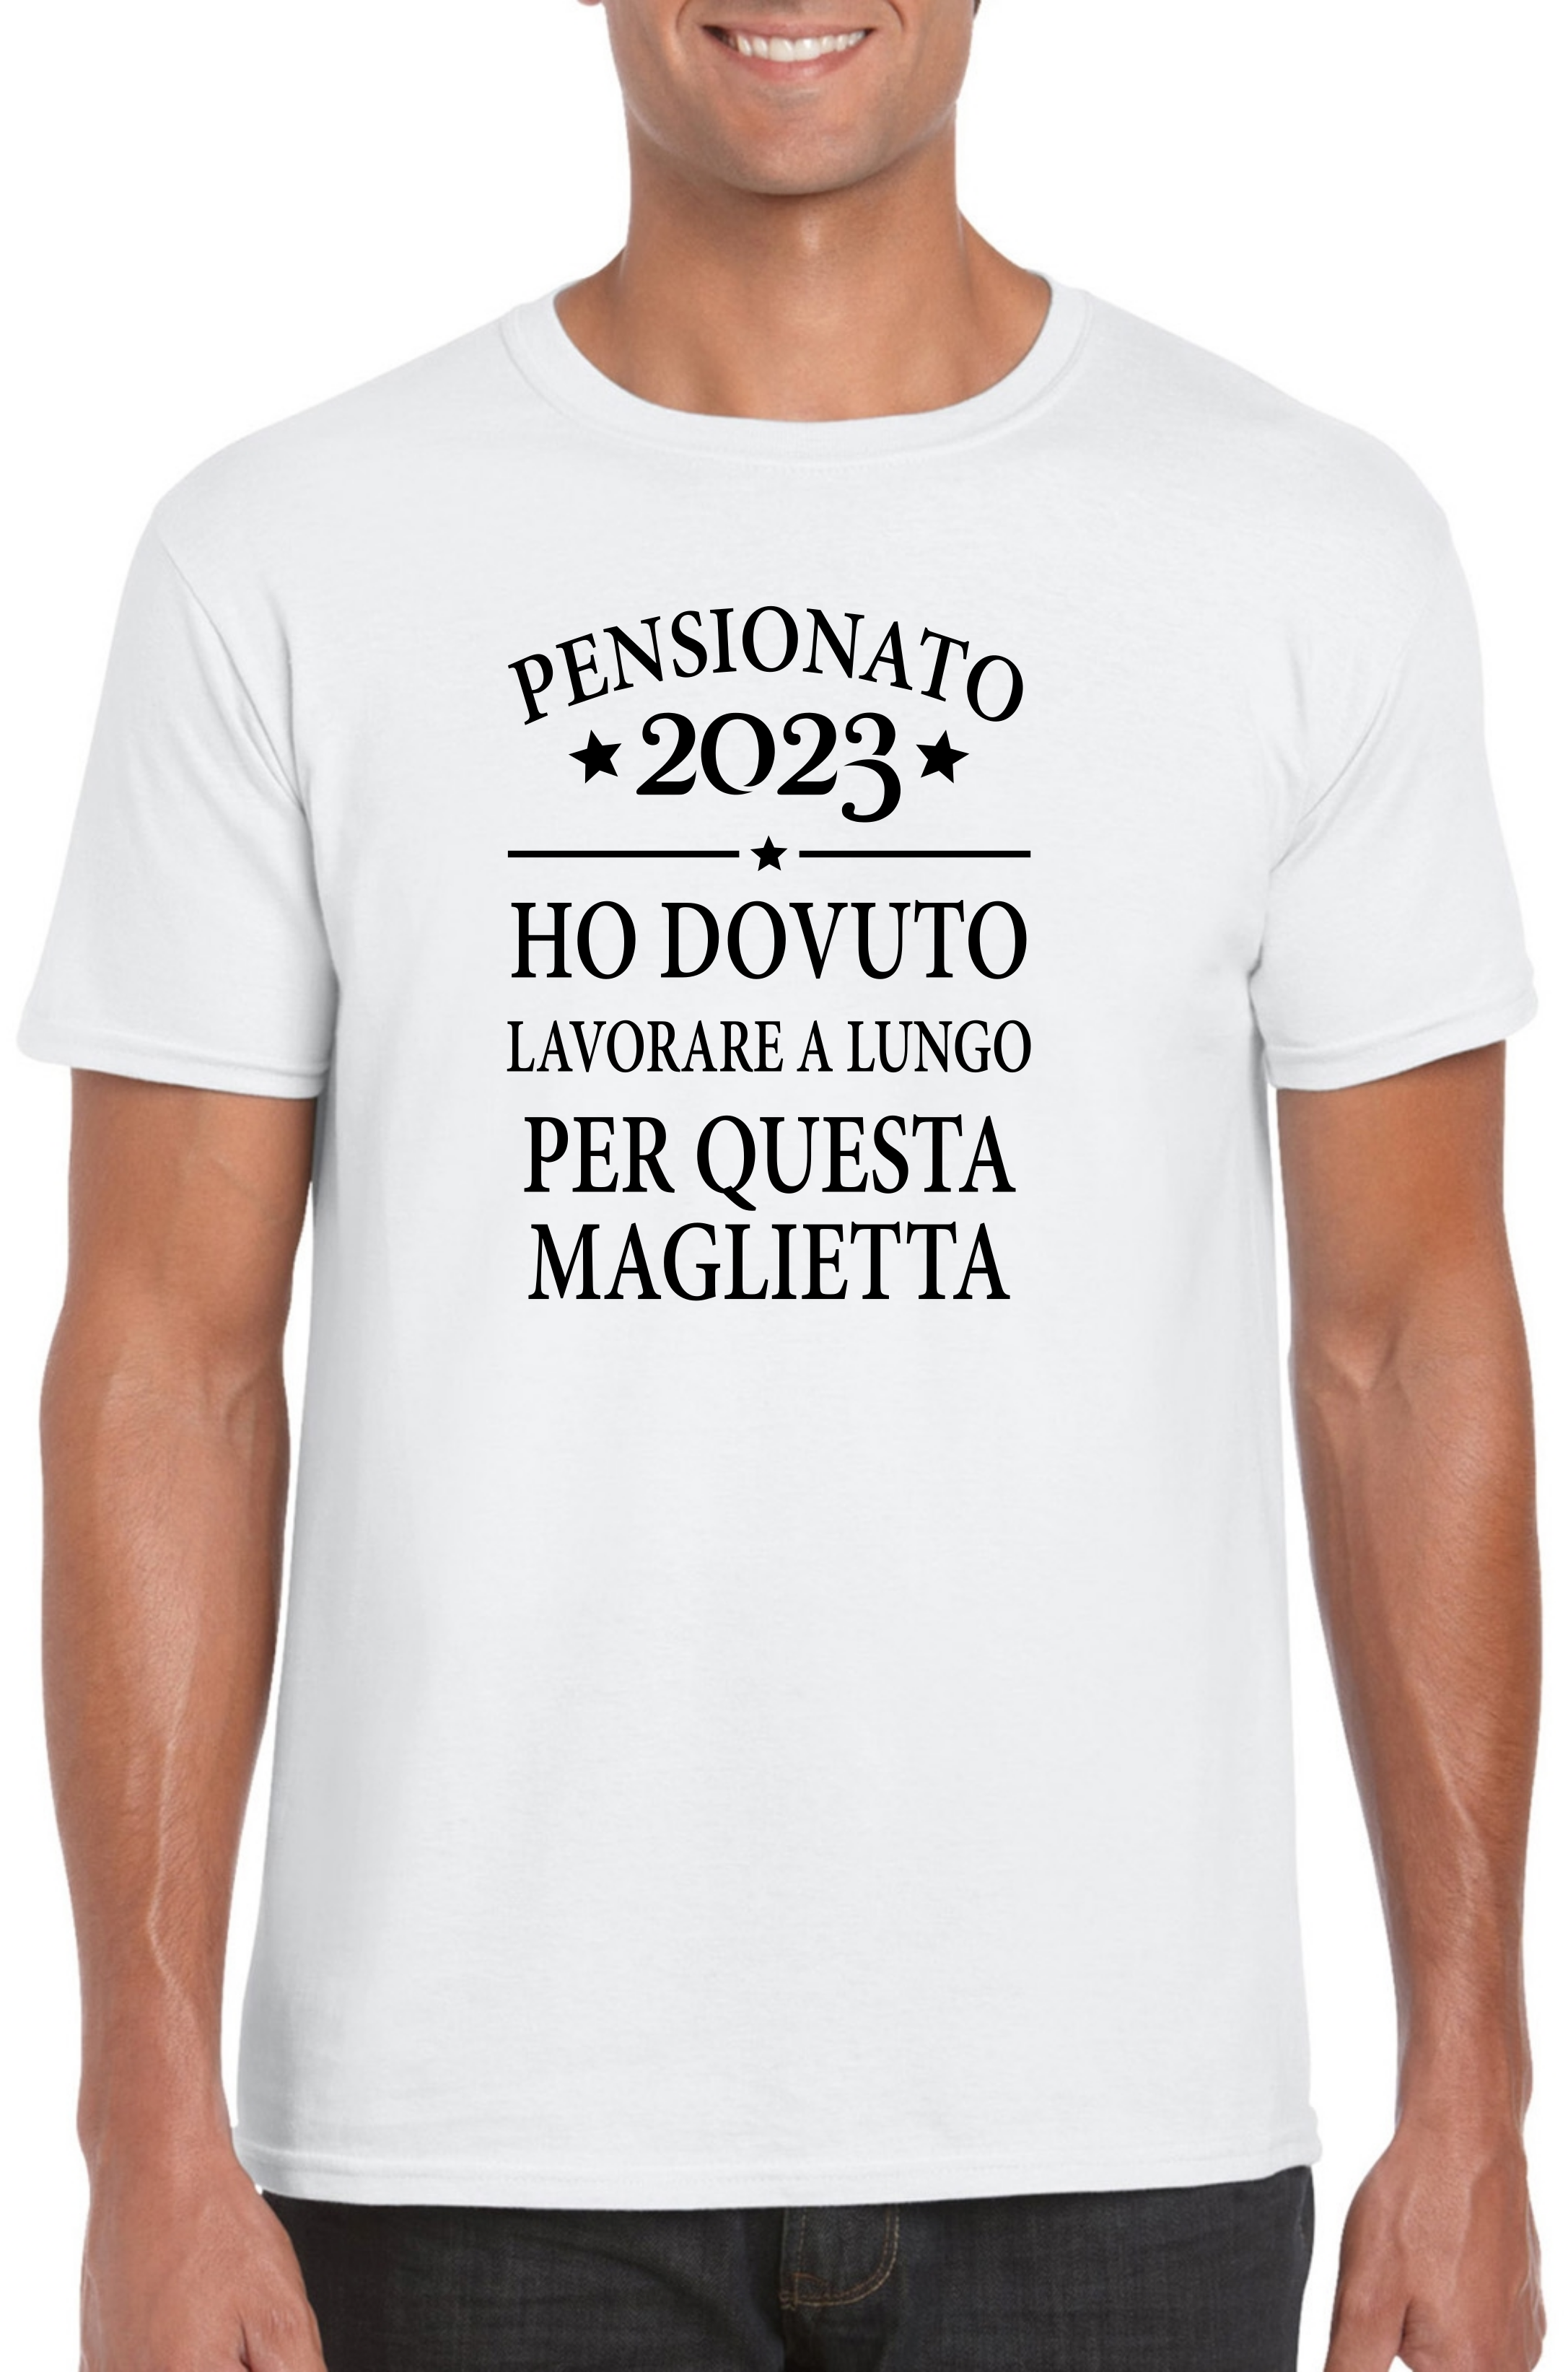 https://www.confettiebomboniere.com/images/bomboniere/maglietta-uomo-spiritosa-pensionato-2023-7f6aef85.png